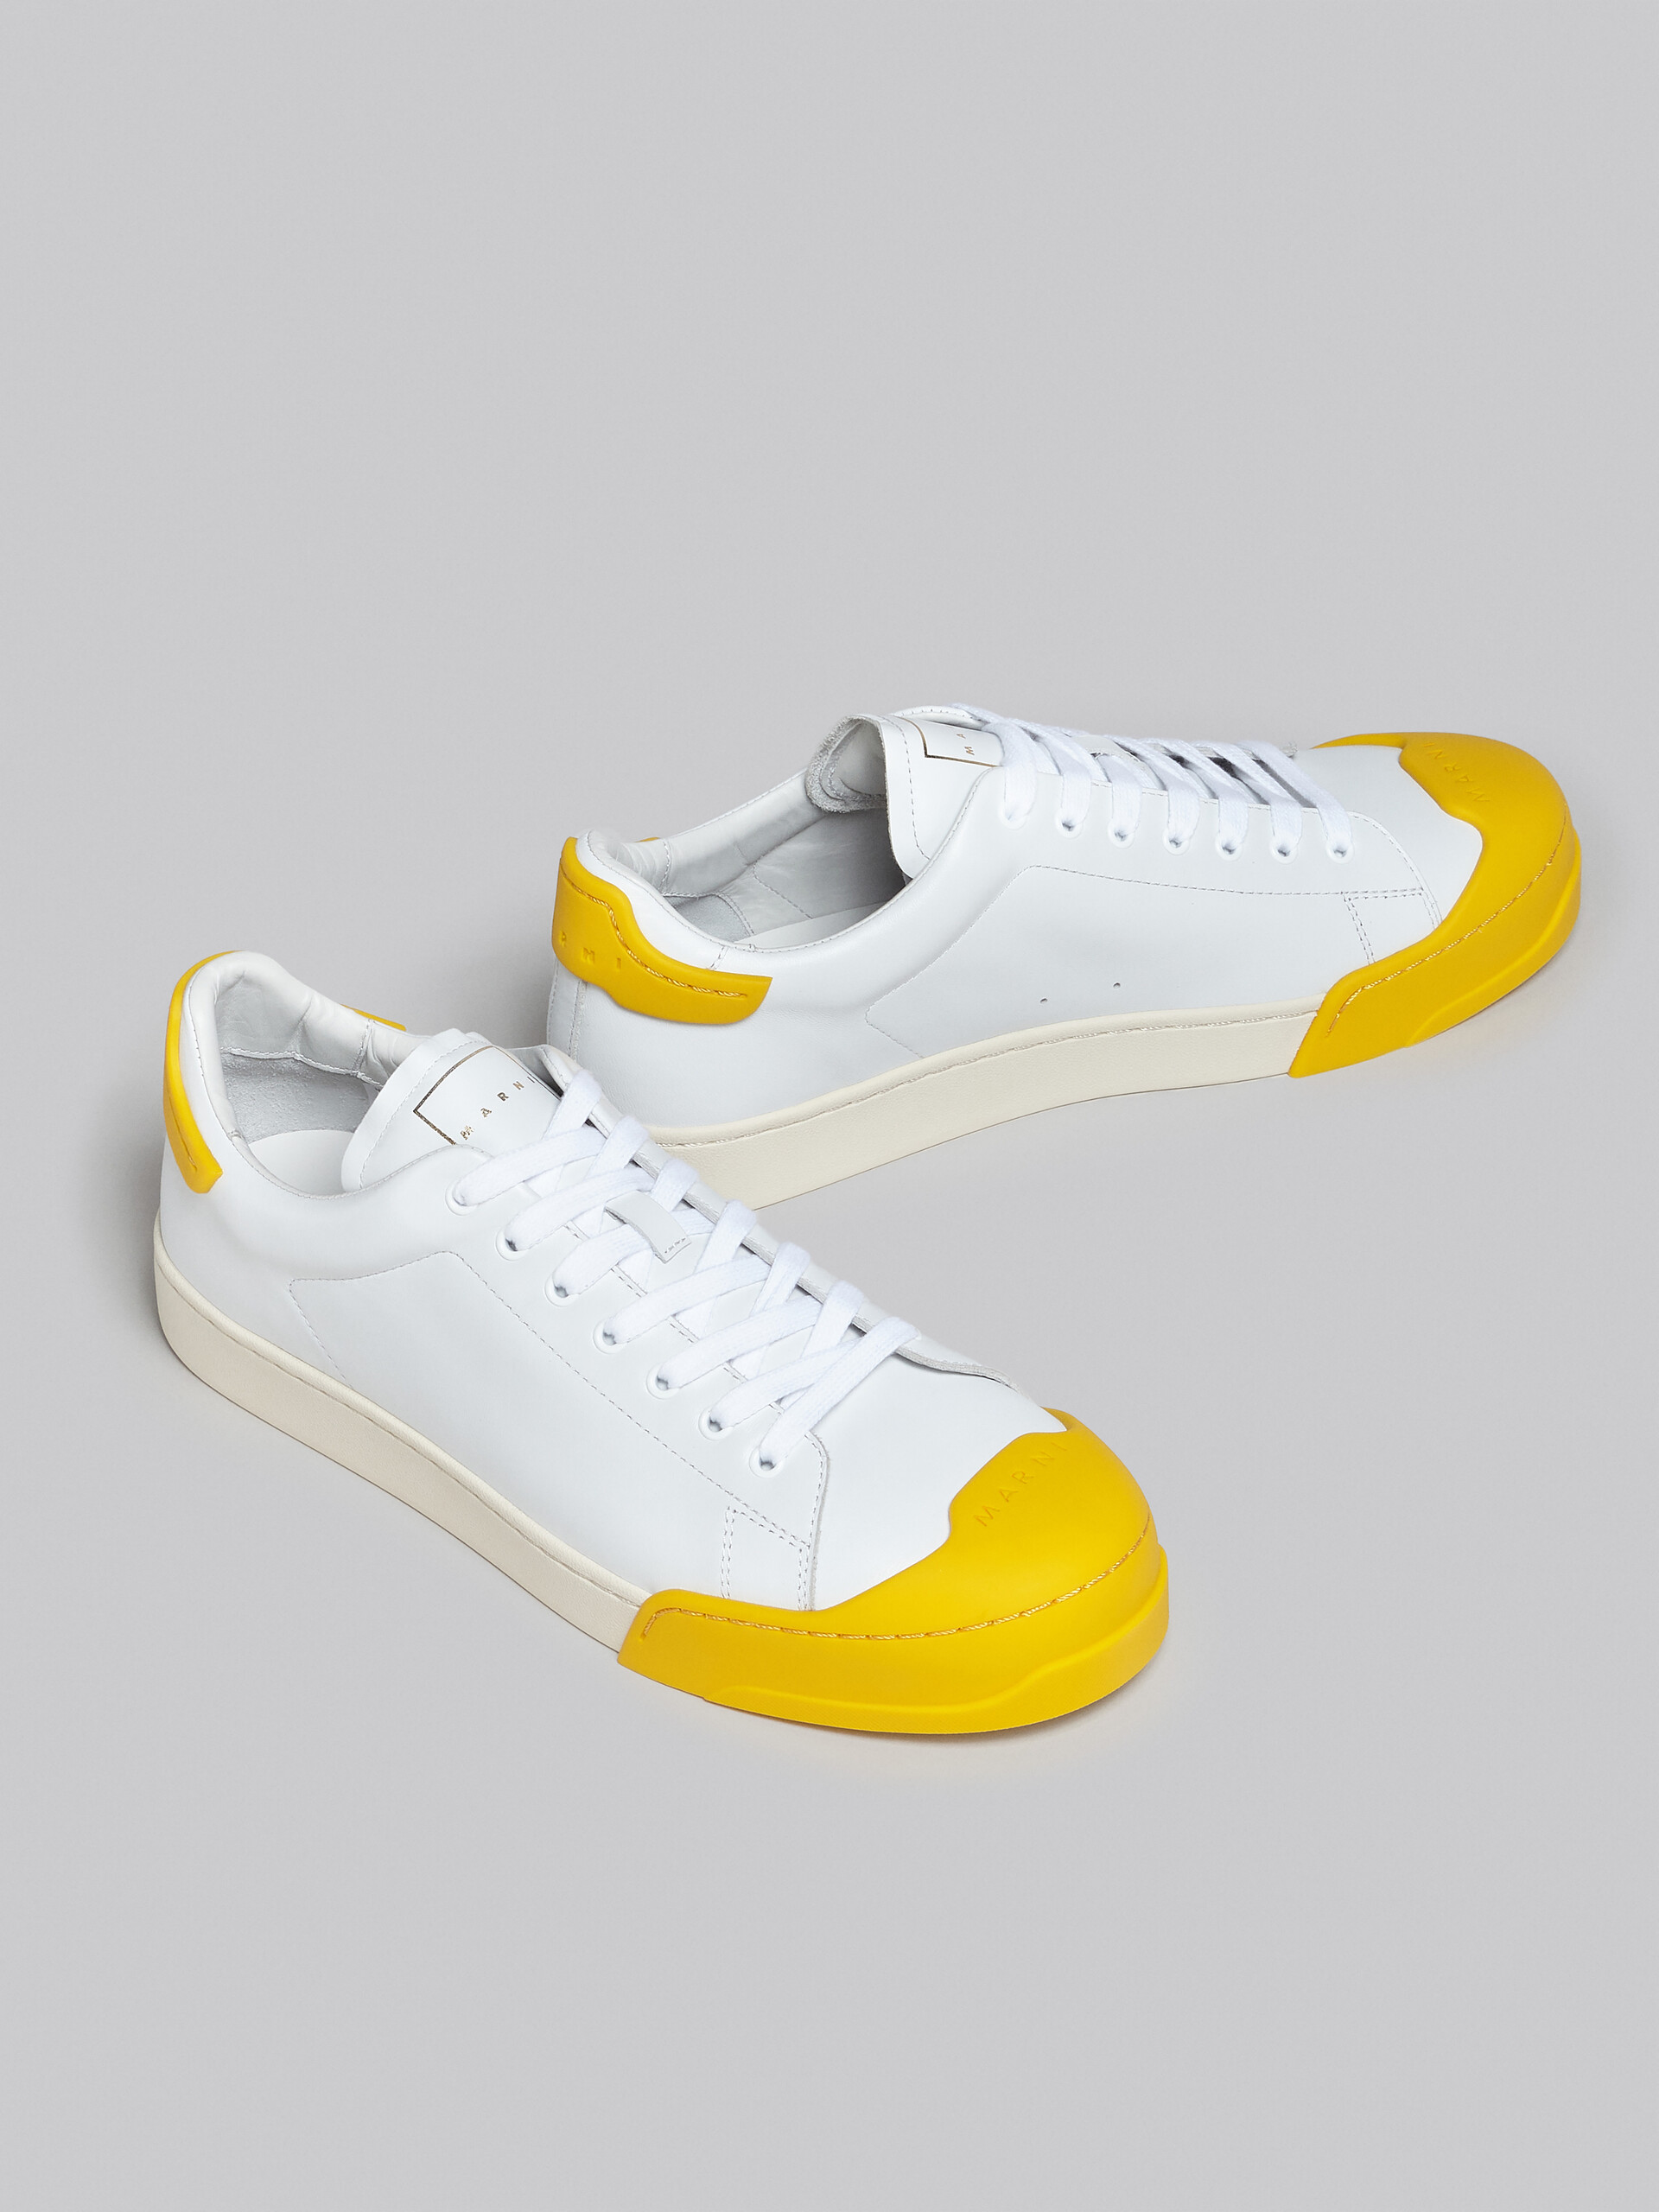 Sneakers Dada Bumper en cuir blanc et jaune - Sneakers - Image 5